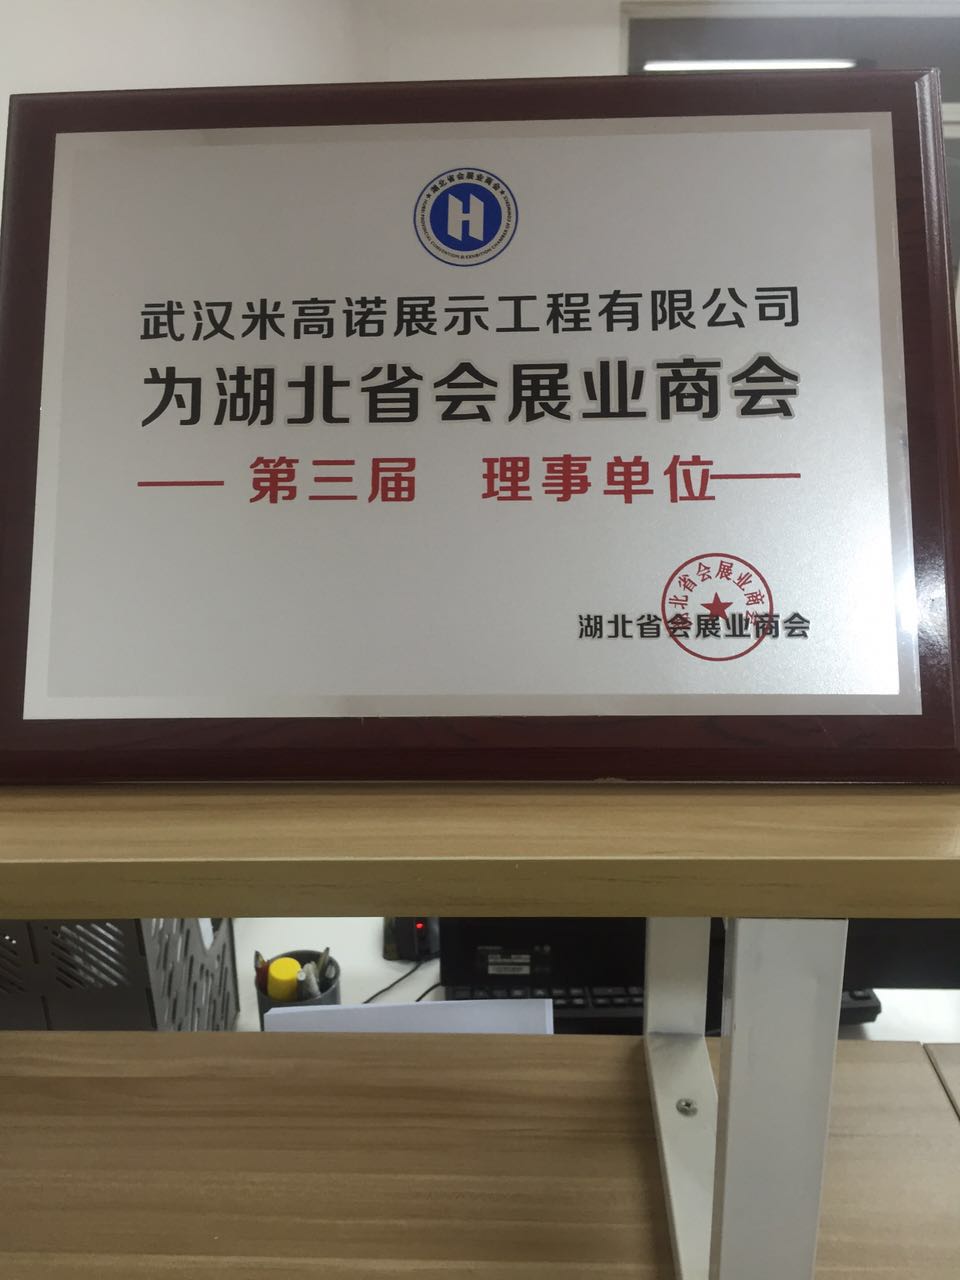 米高诺展示荣获湖北省会展业商会“第三届理事单位”职称